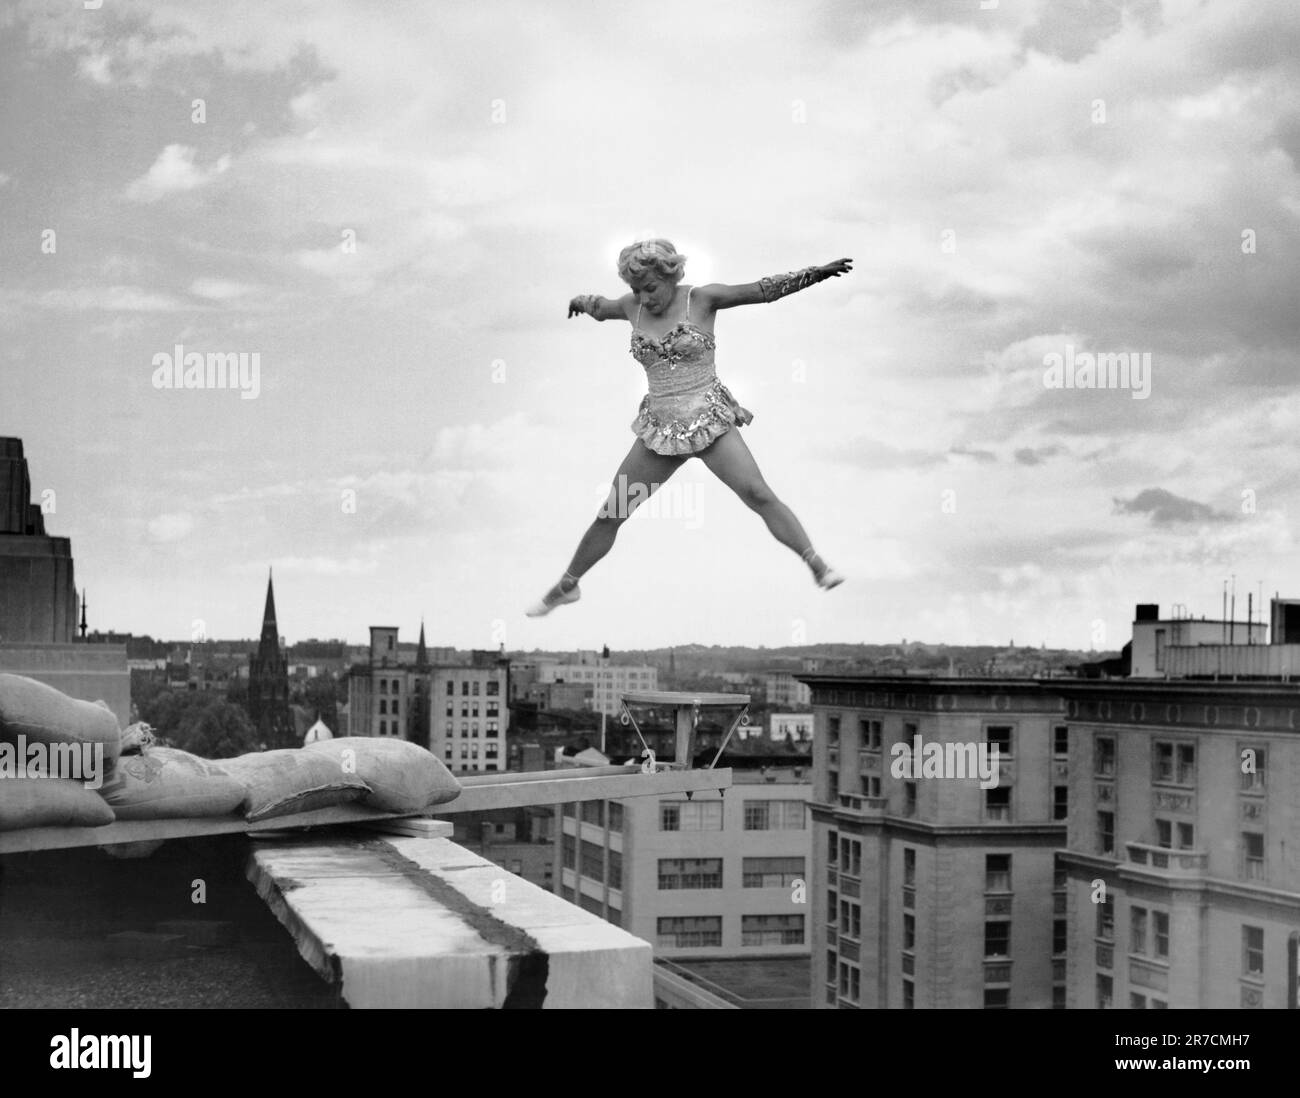 Washington, D.C.: 5. Juni 1954 Betty Fox führt ihre Akrobatikroutine auf einer winzigen Plattform auf, die vom Dach des Ambassador Hotels aus erweitert wird. Sie ist 100 Meter über dem Bürgersteig. Stockfoto